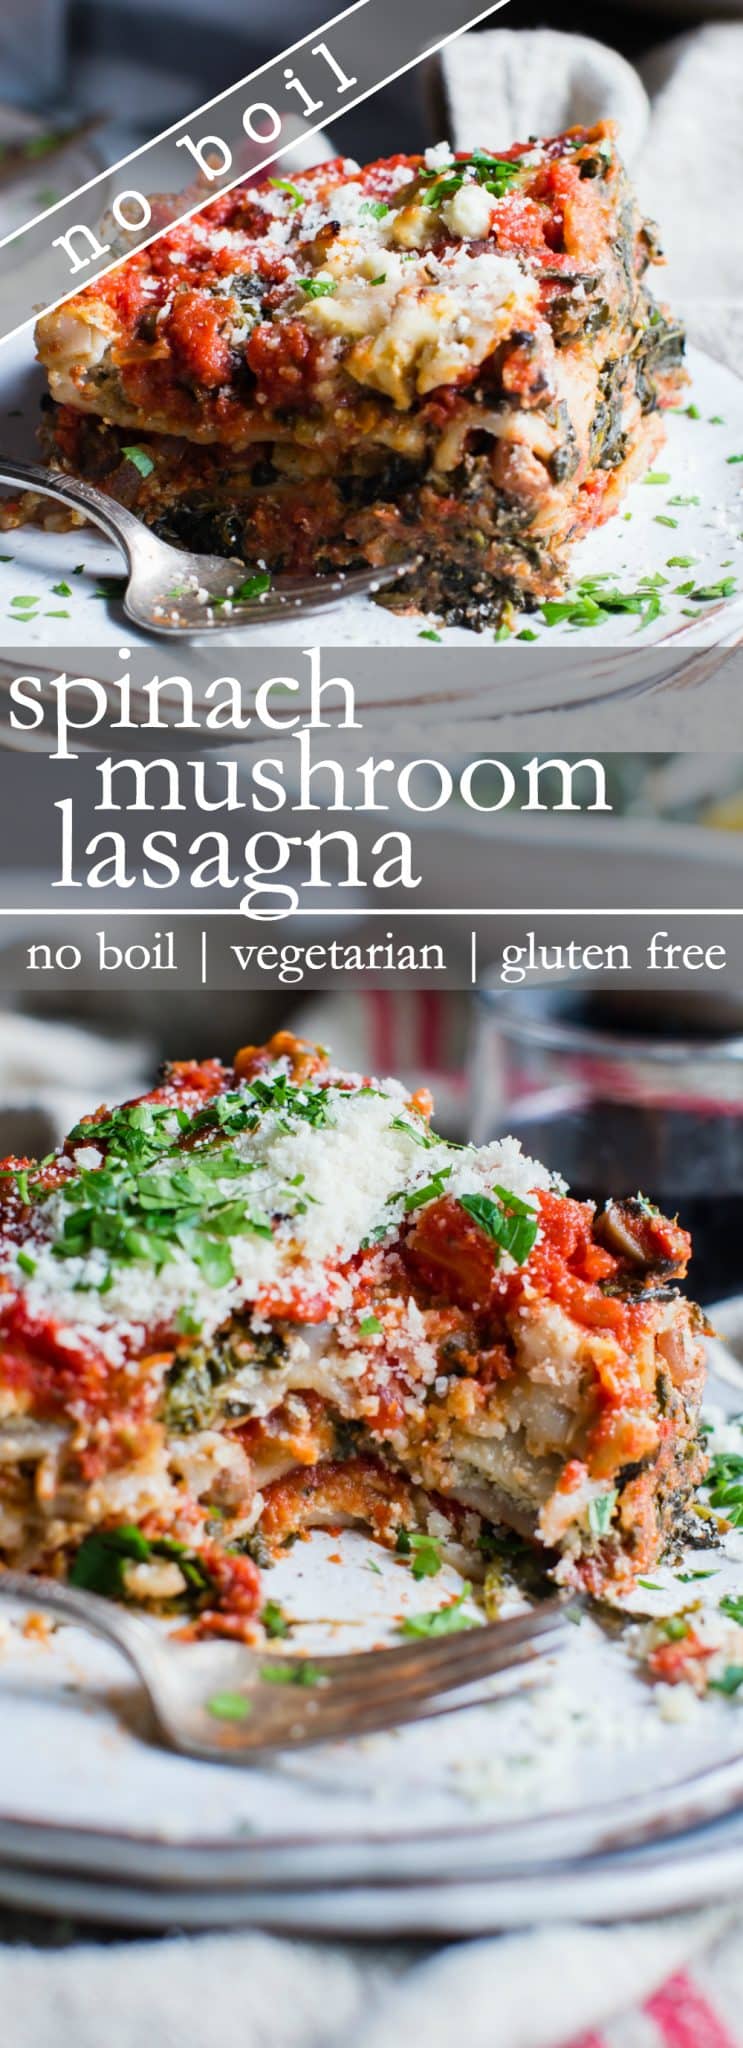 Pinterest pin for spinach mushroom lasagna. 